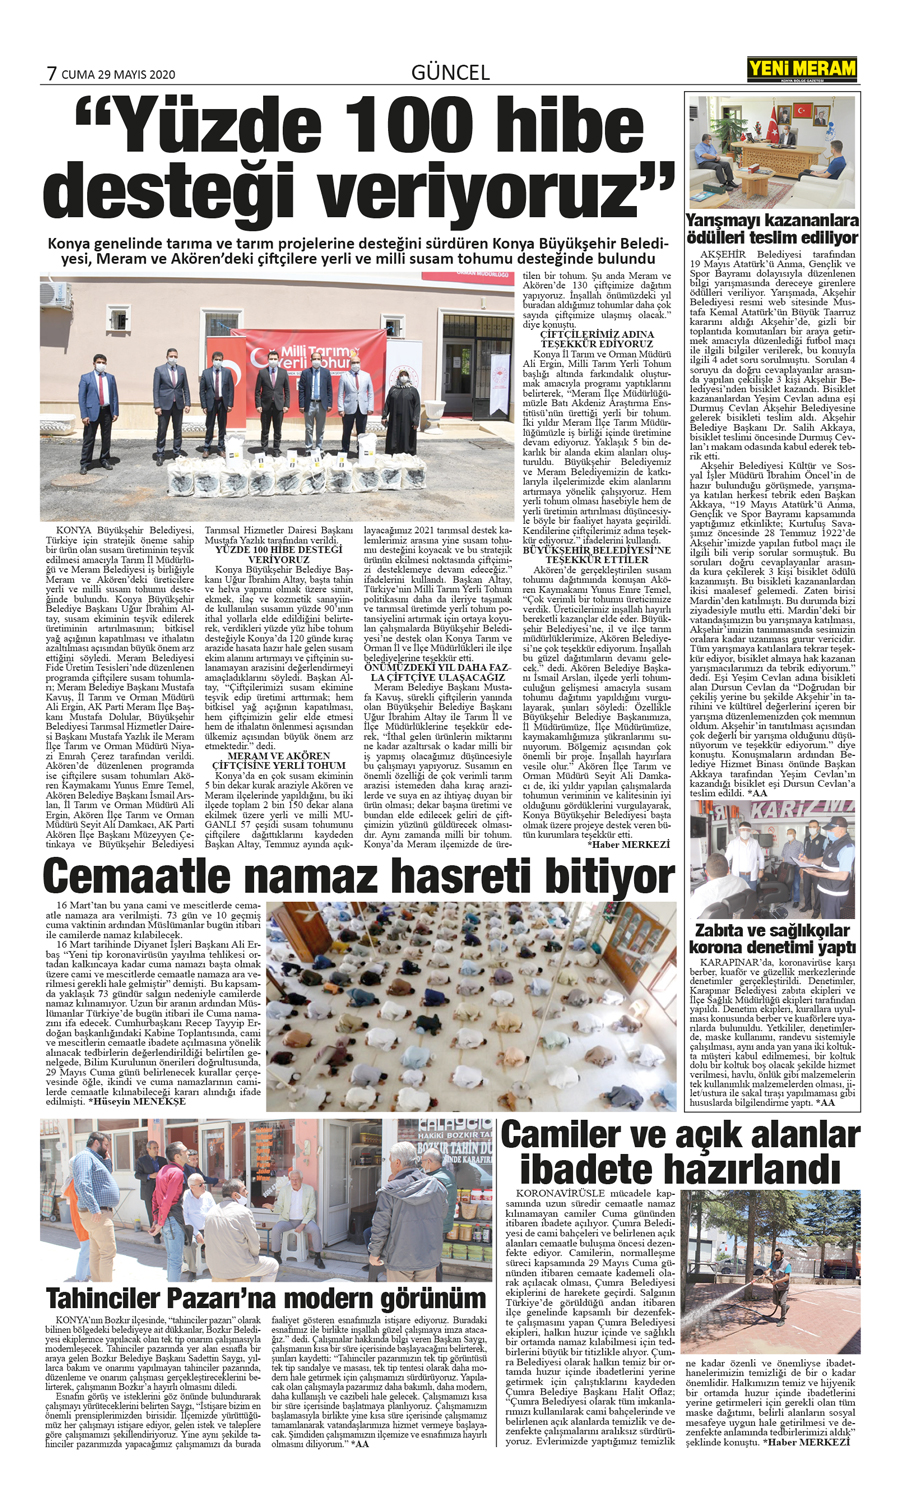 29 Mayıs 2020 Yeni Meram Gazetesi